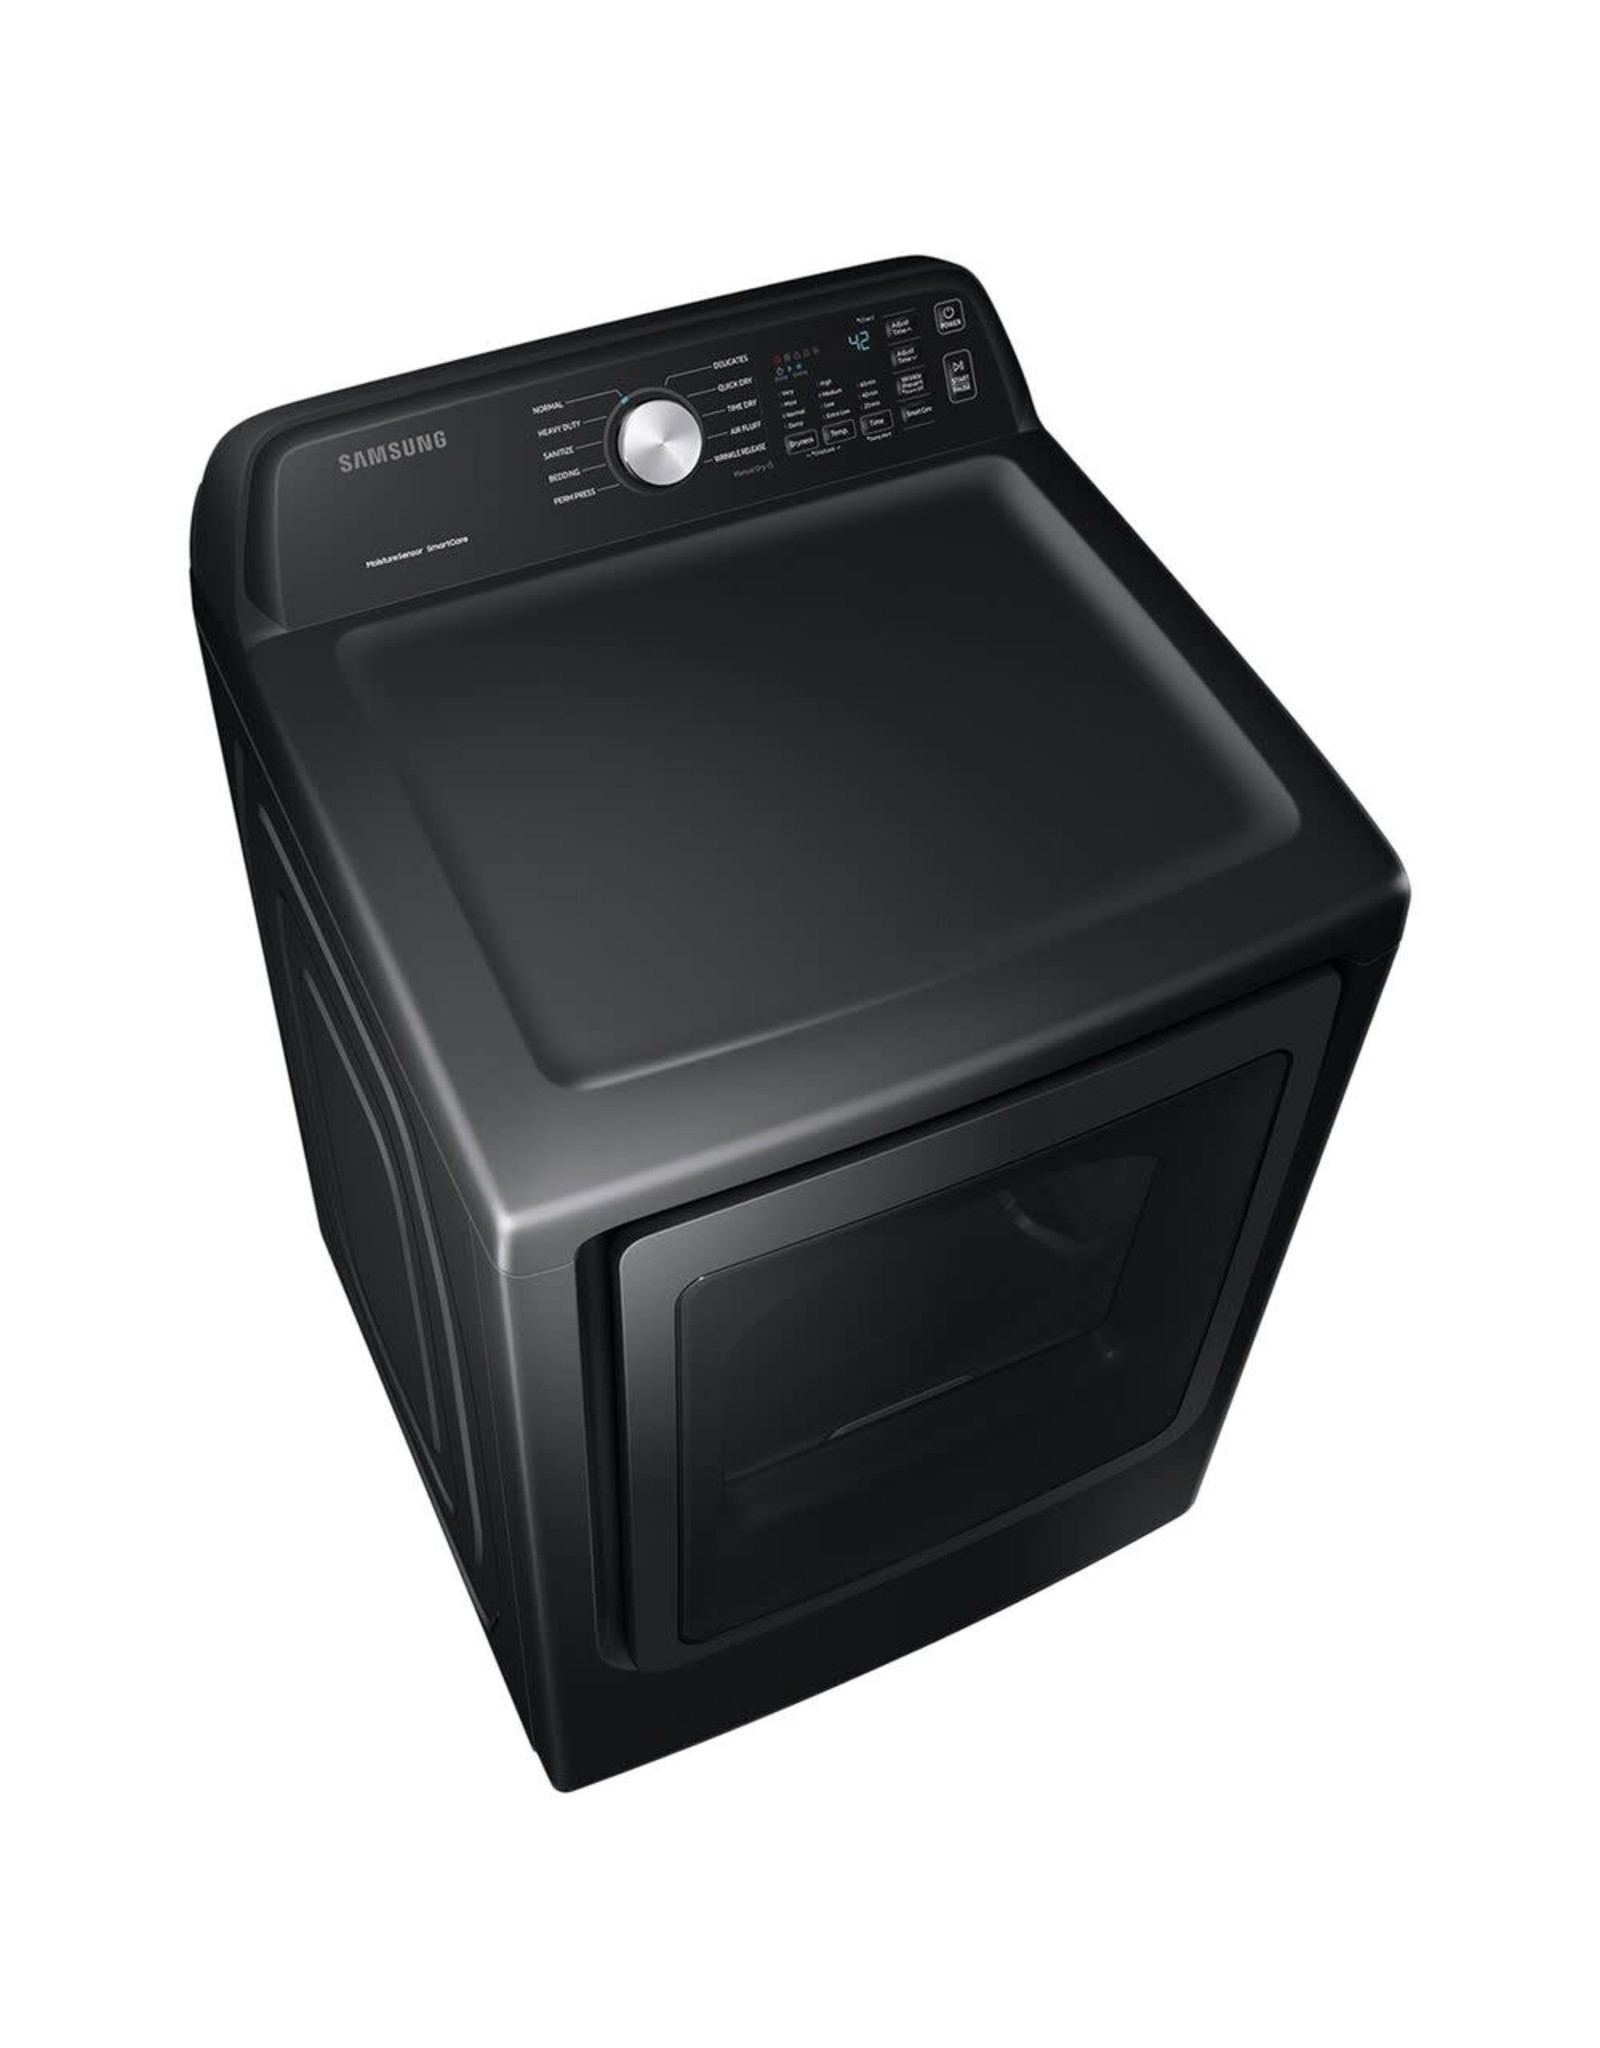 SAMSUNG DVE50R5200V 7.4 cu. ft. Brushed Black Electric Dryer with Sensor Dry